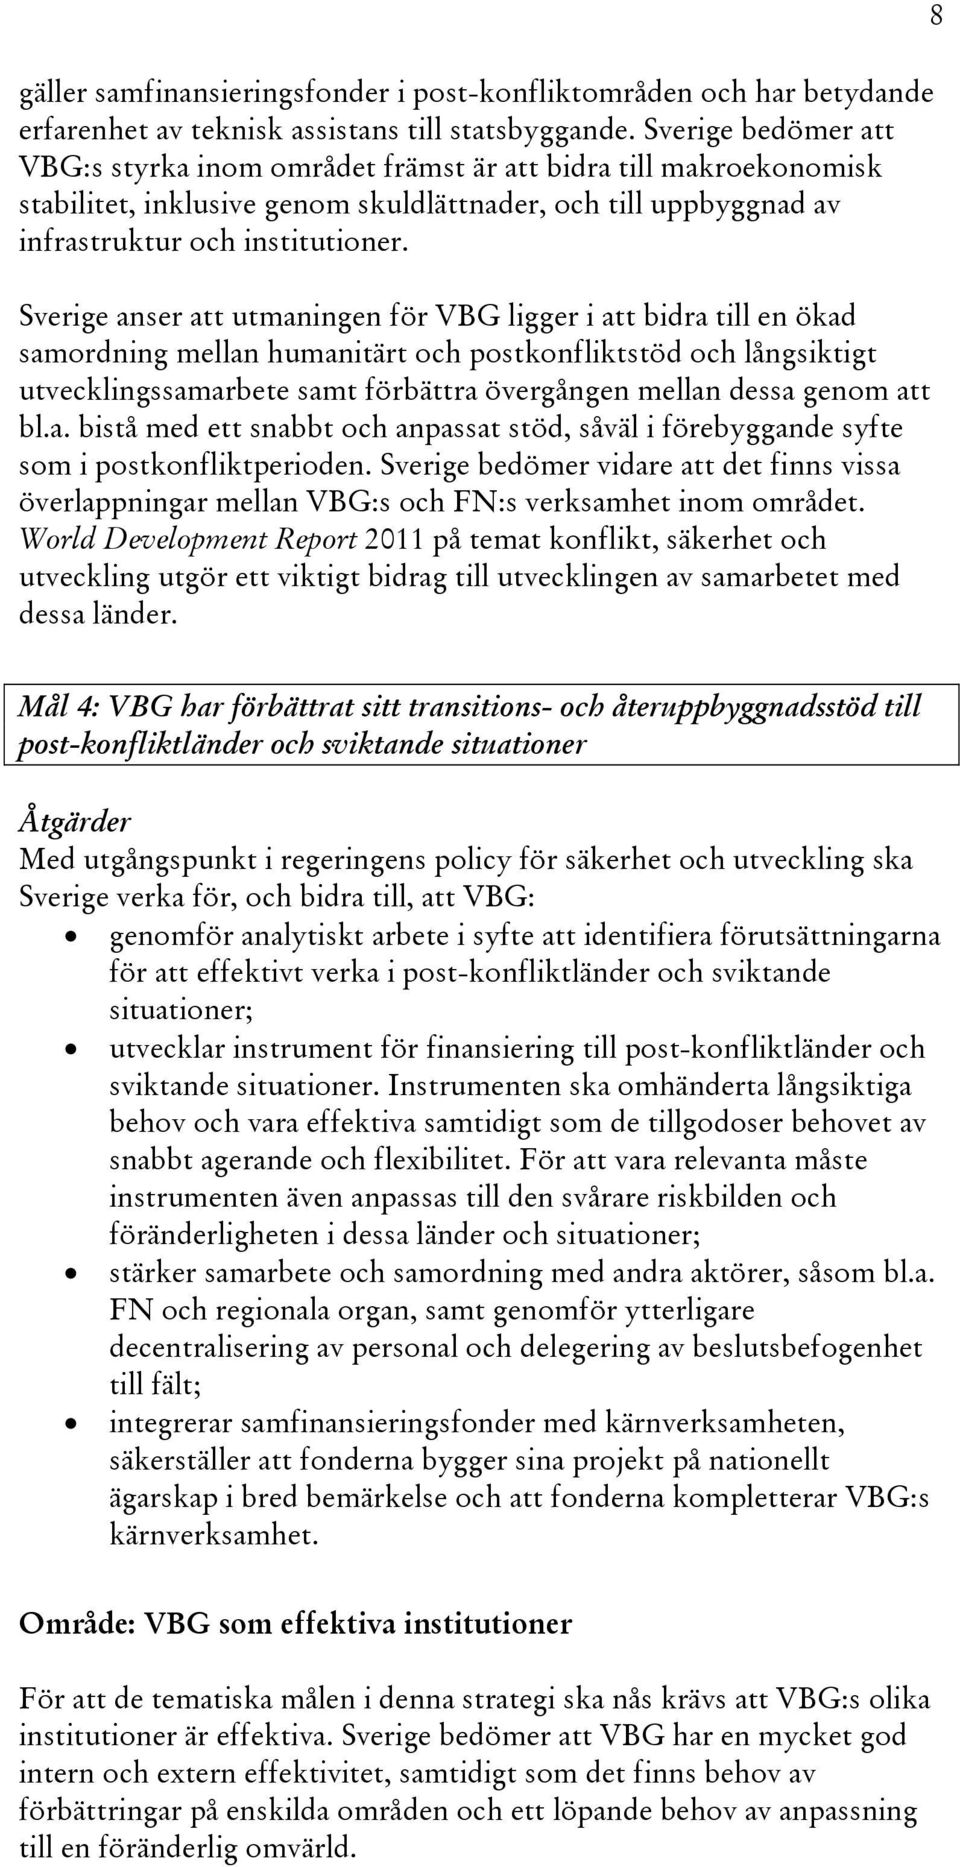 Sverige anser att utmaningen för VBG ligger i att bidra till en ökad samordning mellan humanitärt och postkonfliktstöd och långsiktigt utvecklingssamarbete samt förbättra övergången mellan dessa